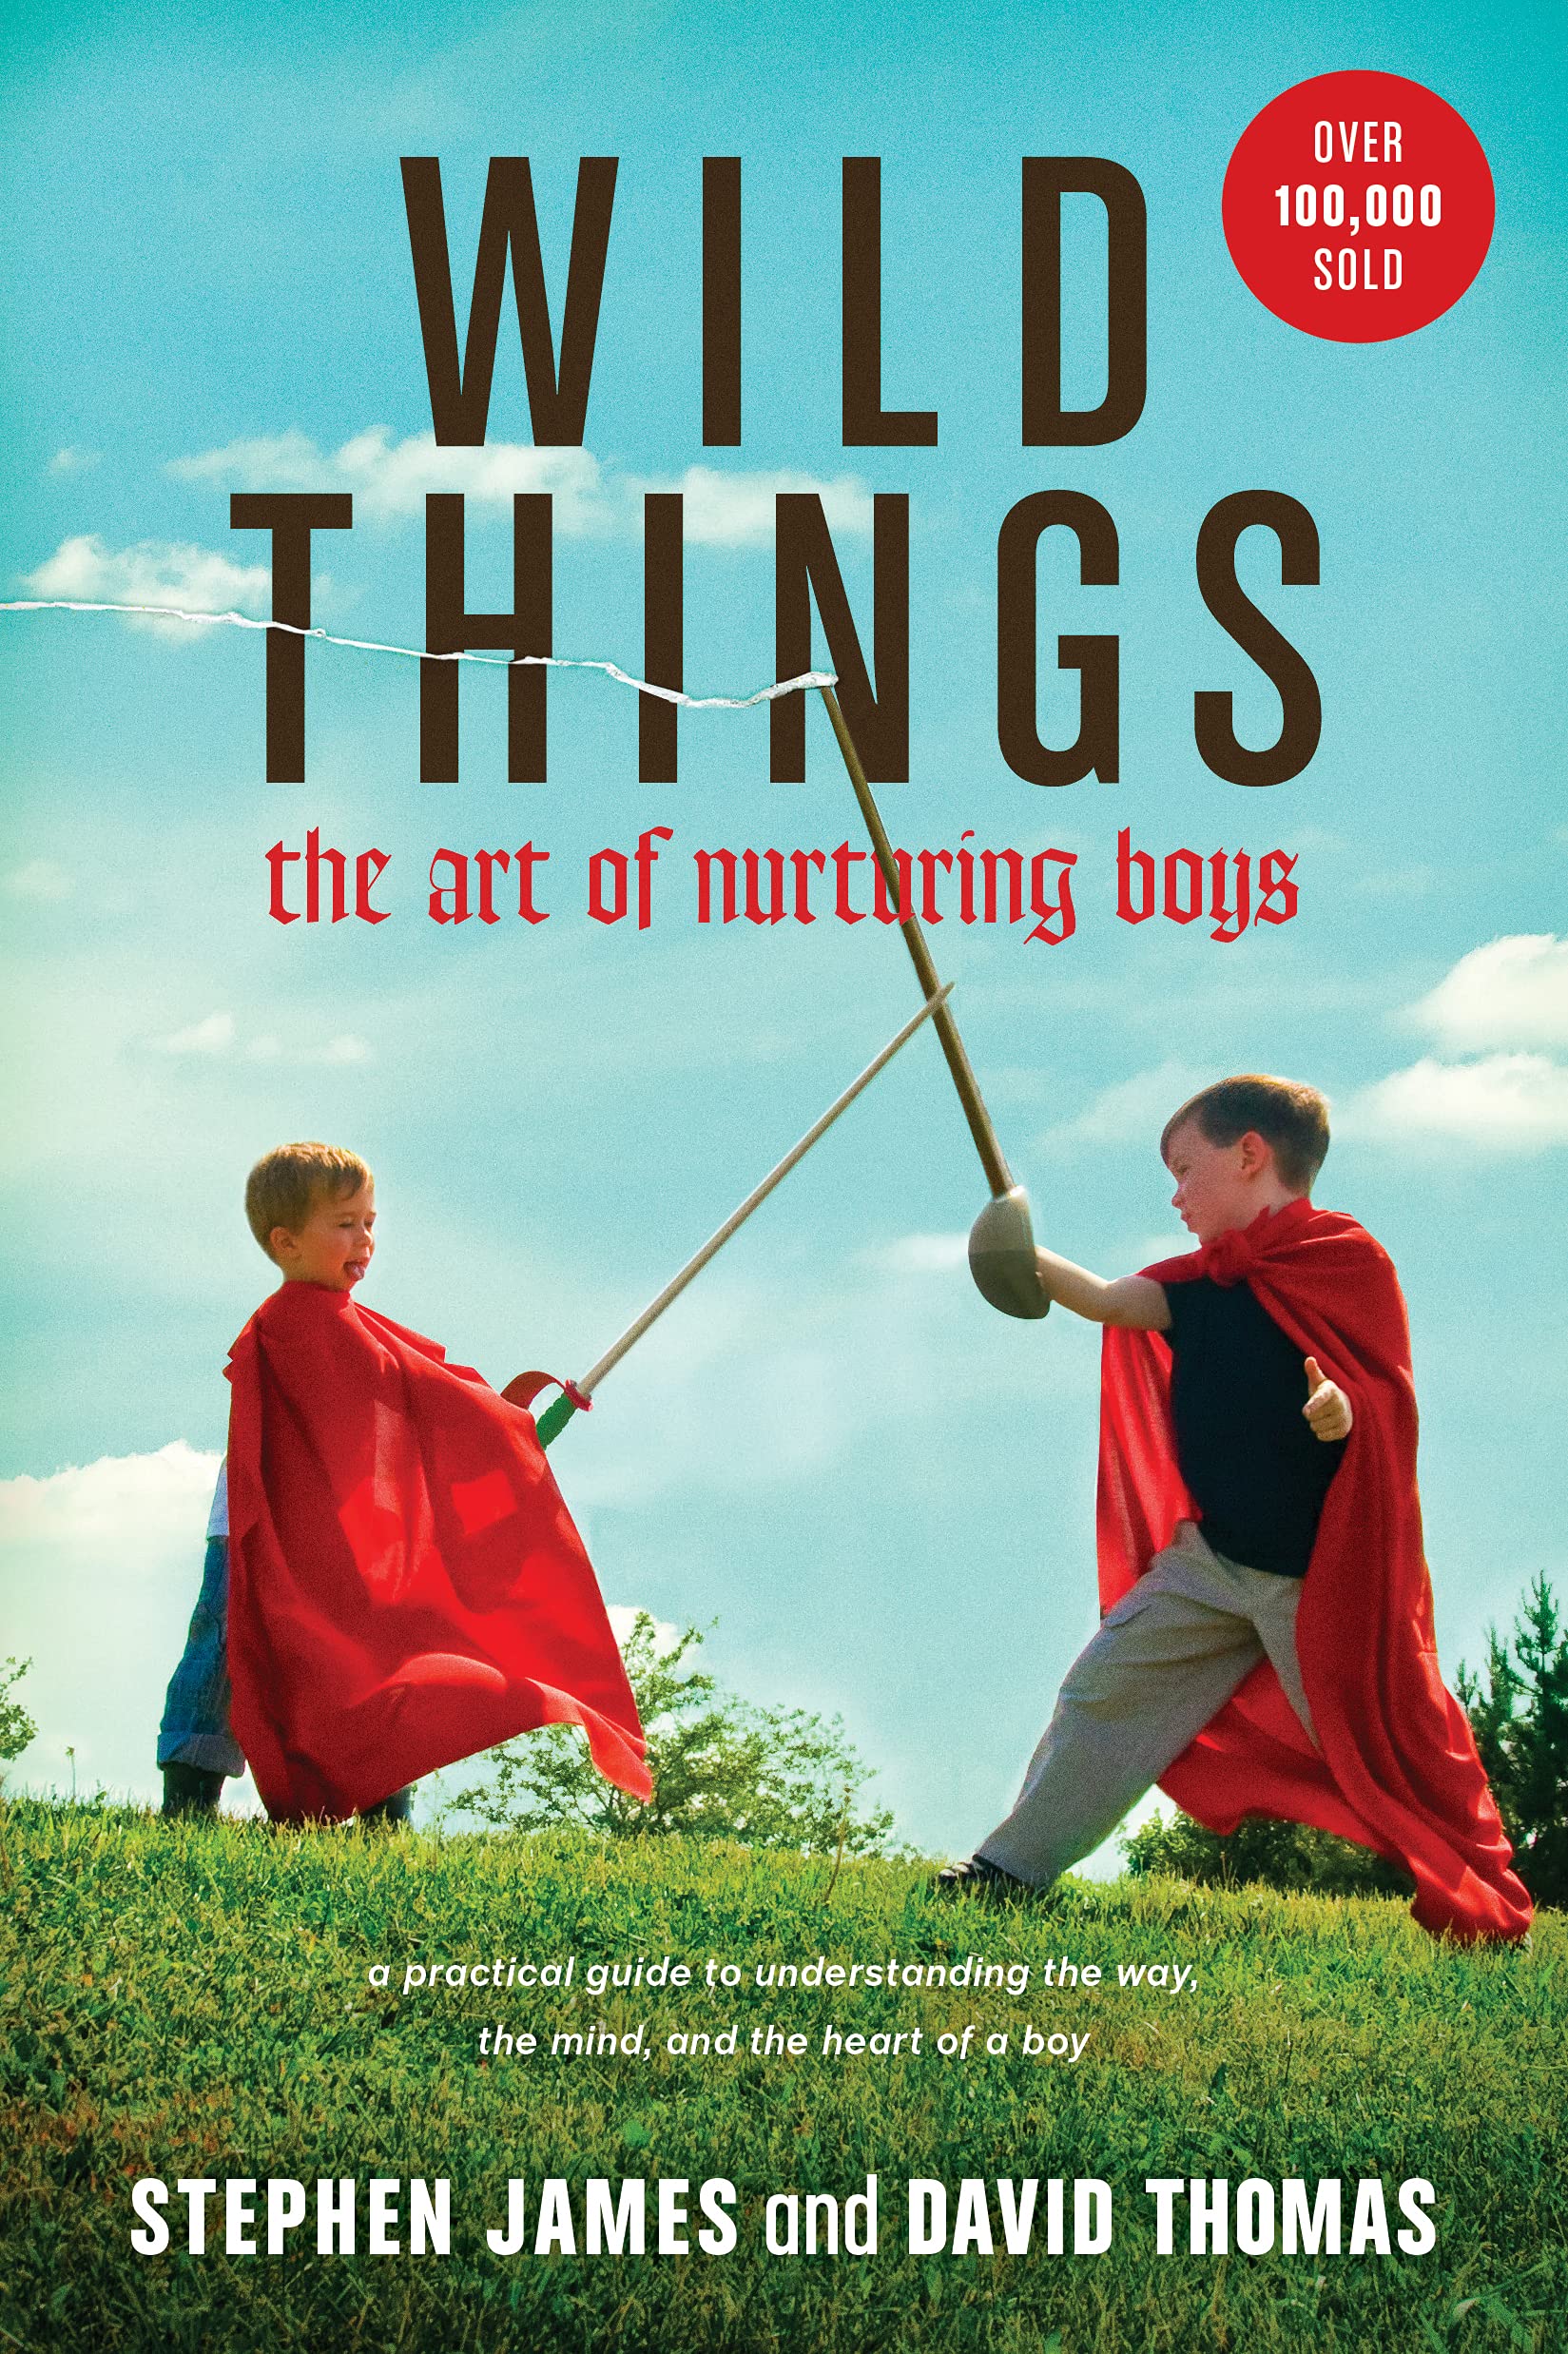 parenting book raising boys